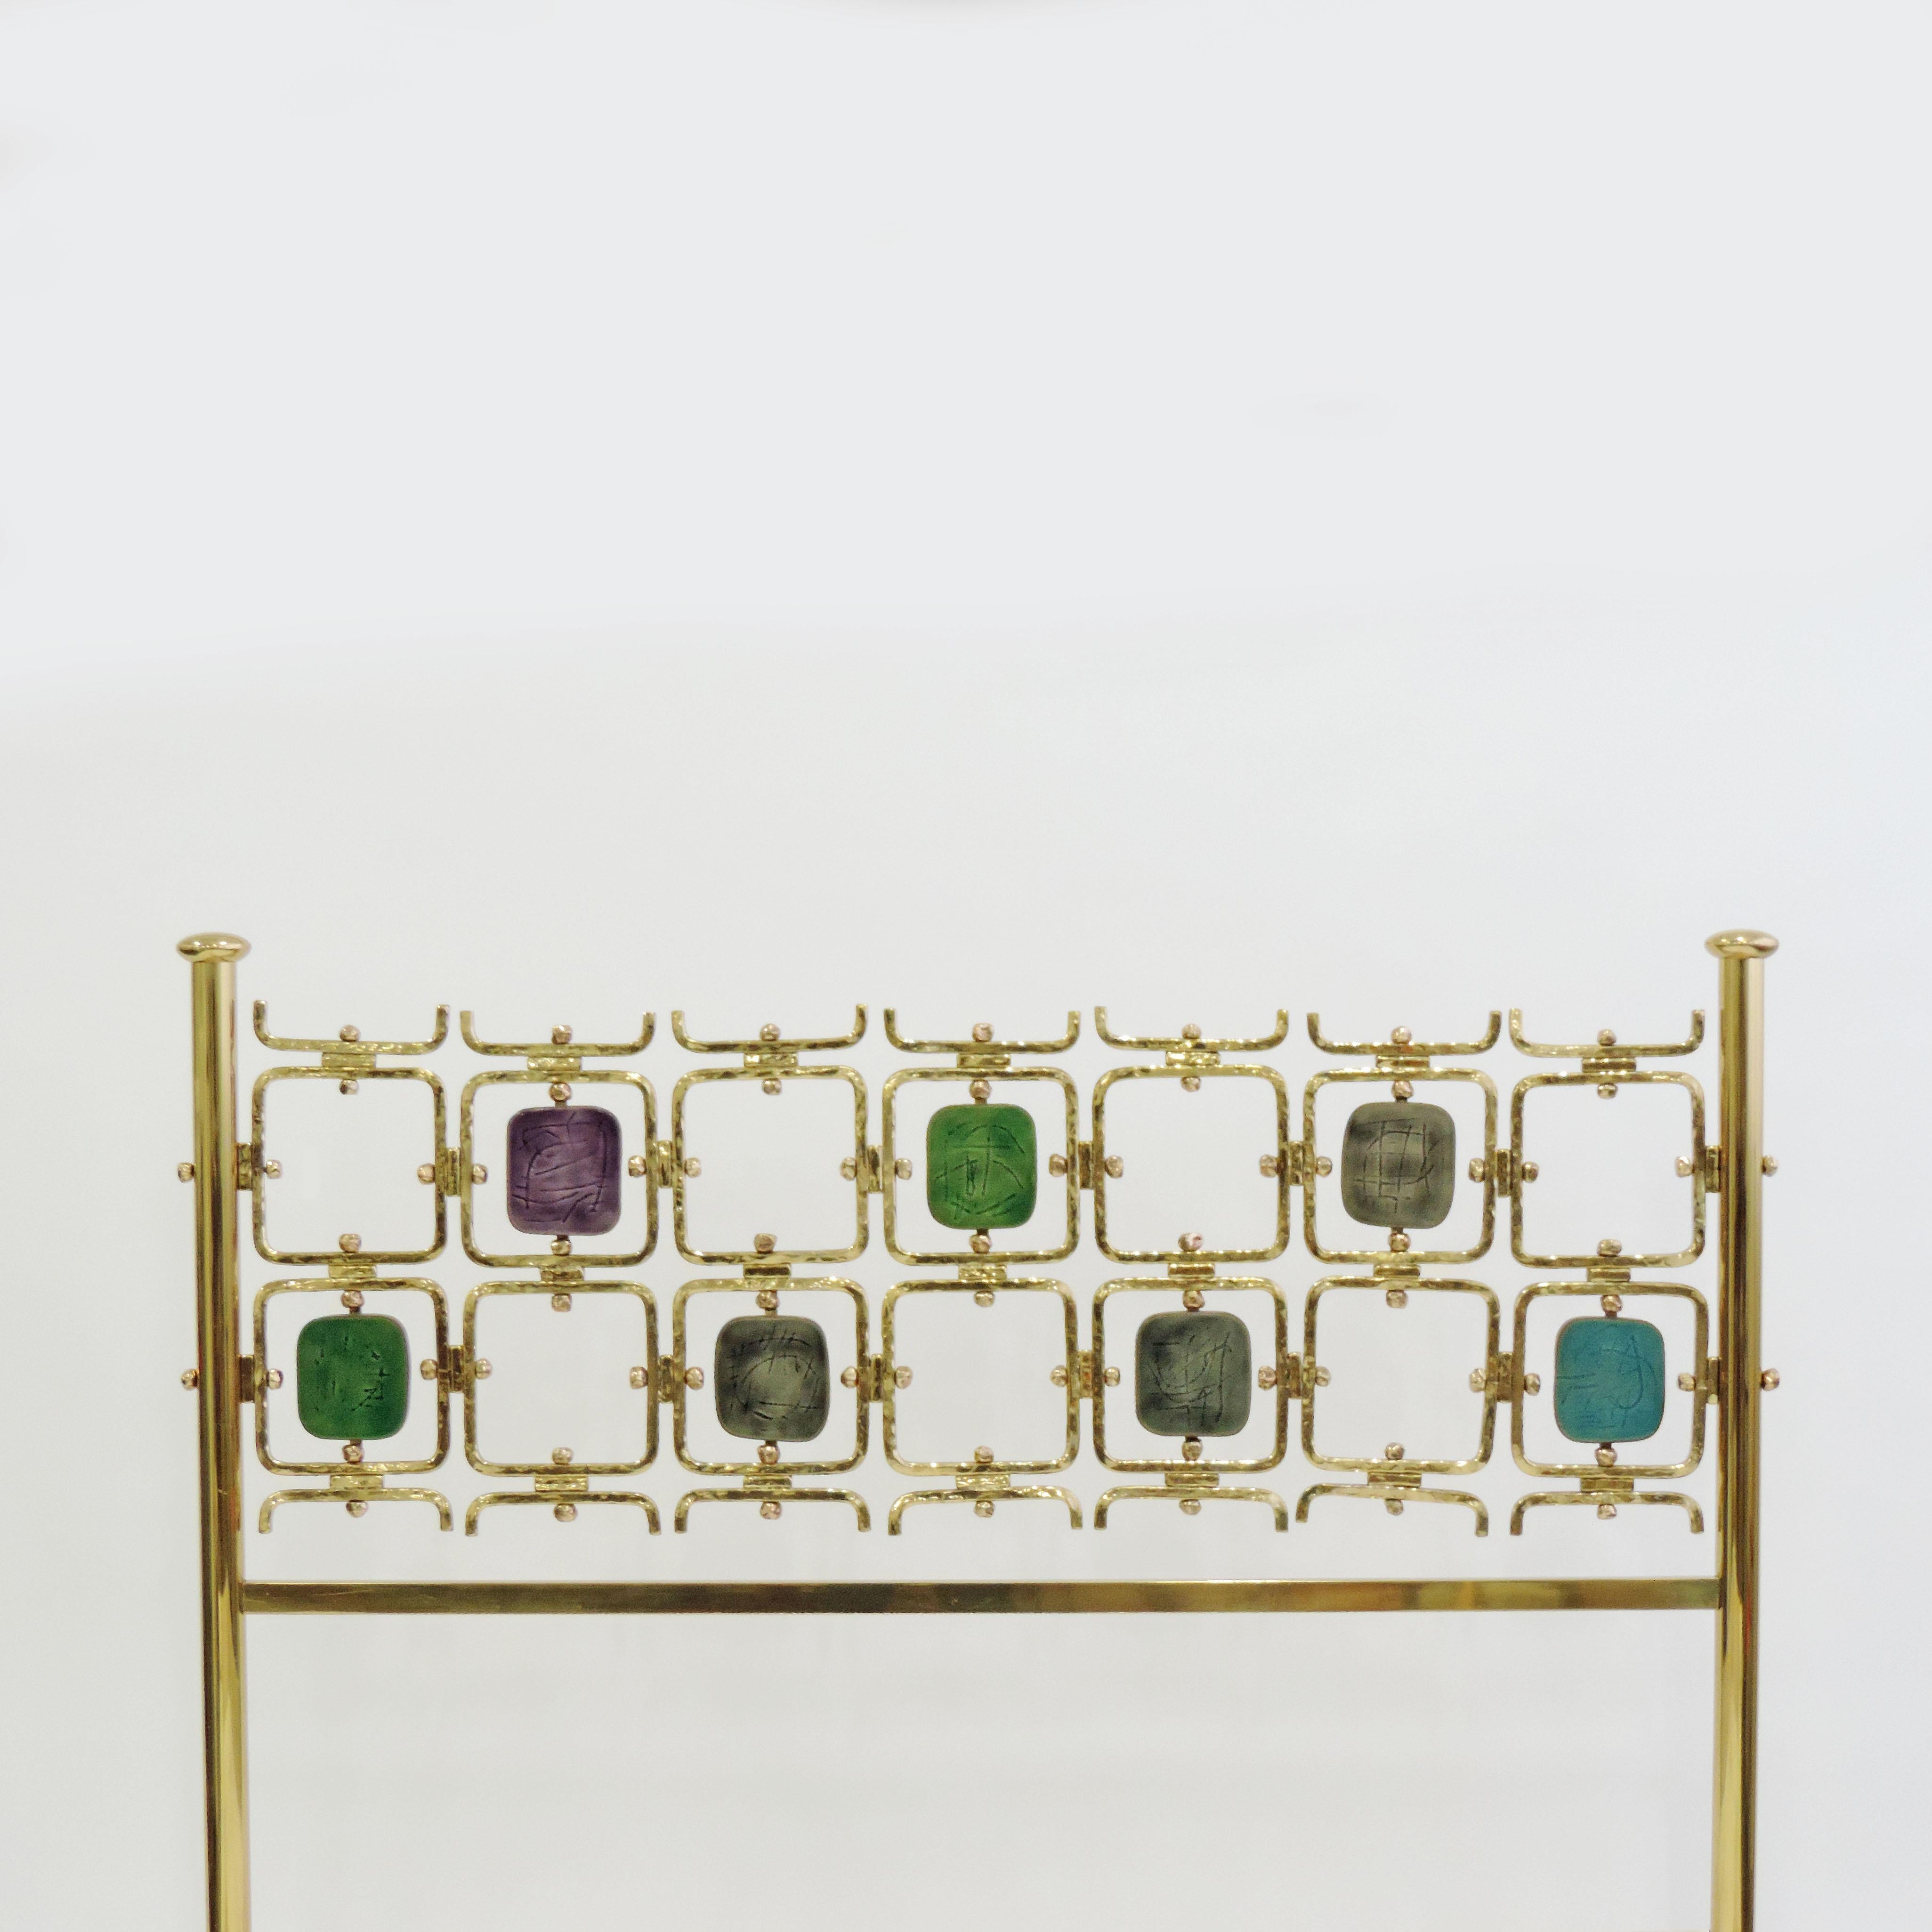 Rare lit double Osvaldo Borsani et Arnaldo Pomodoro modèle no. 8604, Italie, 1962
Une coordination spectaculaire des couleurs, un chef-d'œuvre.
Pièces en laiton numérotées, sommiers d'origine et panneaux en PVC Borsani d'origine.
Dimensions du